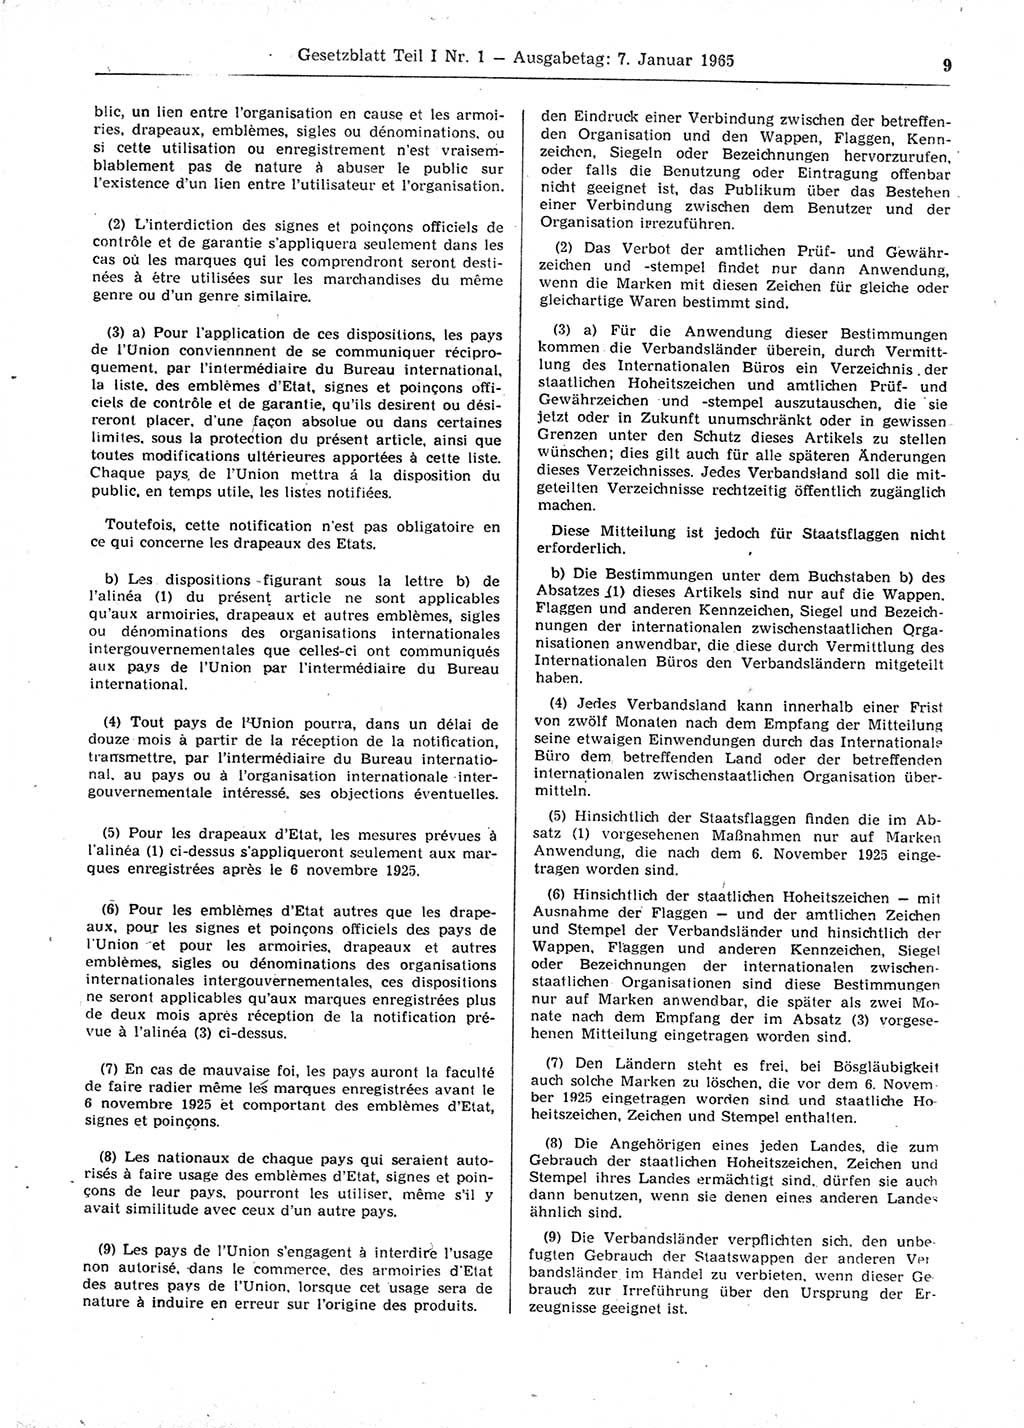 Gesetzblatt (GBl.) der Deutschen Demokratischen Republik (DDR) Teil Ⅰ 1965, Seite 9 (GBl. DDR Ⅰ 1965, S. 9)